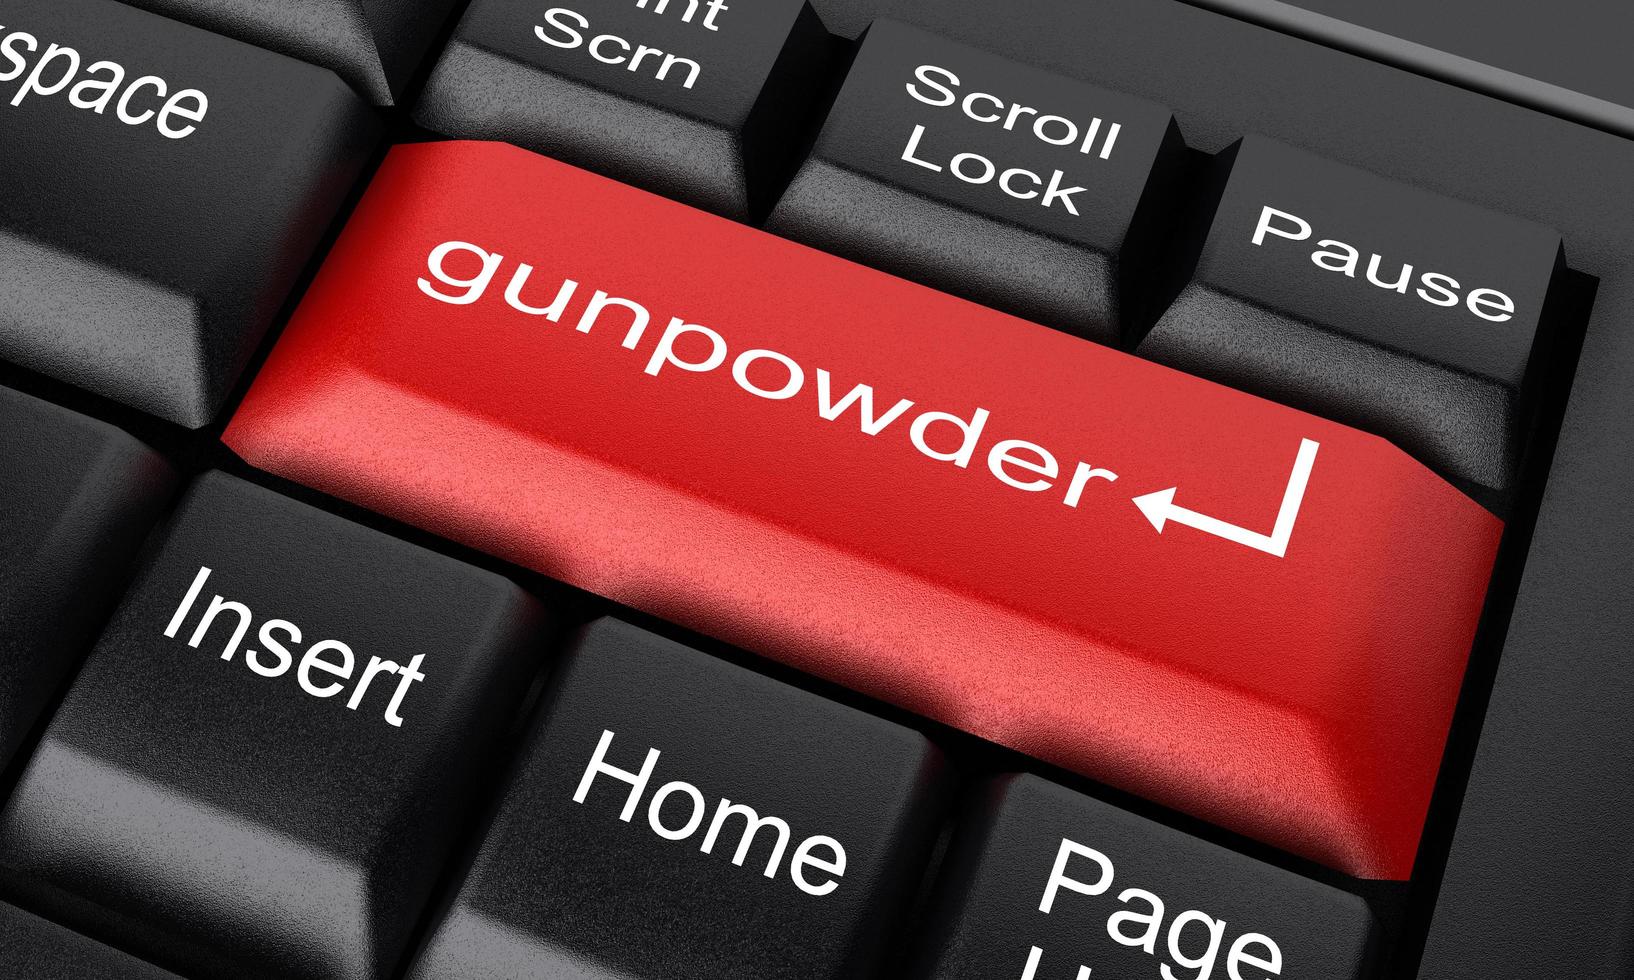 gunpowder word on red keyboard button photo